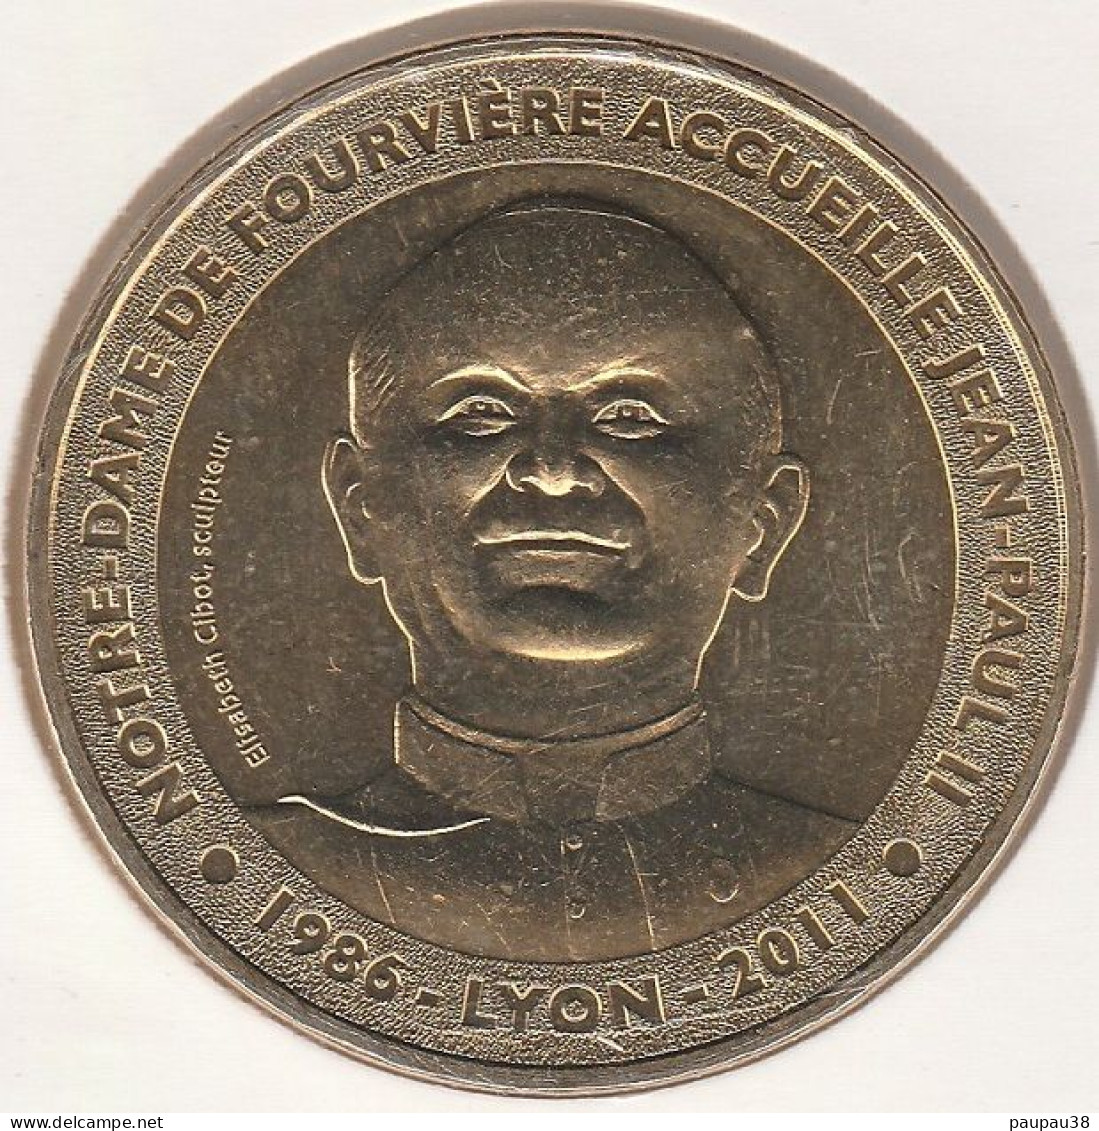 MONNAIE DE PARIS 2012 - 69 LYON Fondation Fourvière - Jean Paul II à Notre Dame De Fourvière - 2012